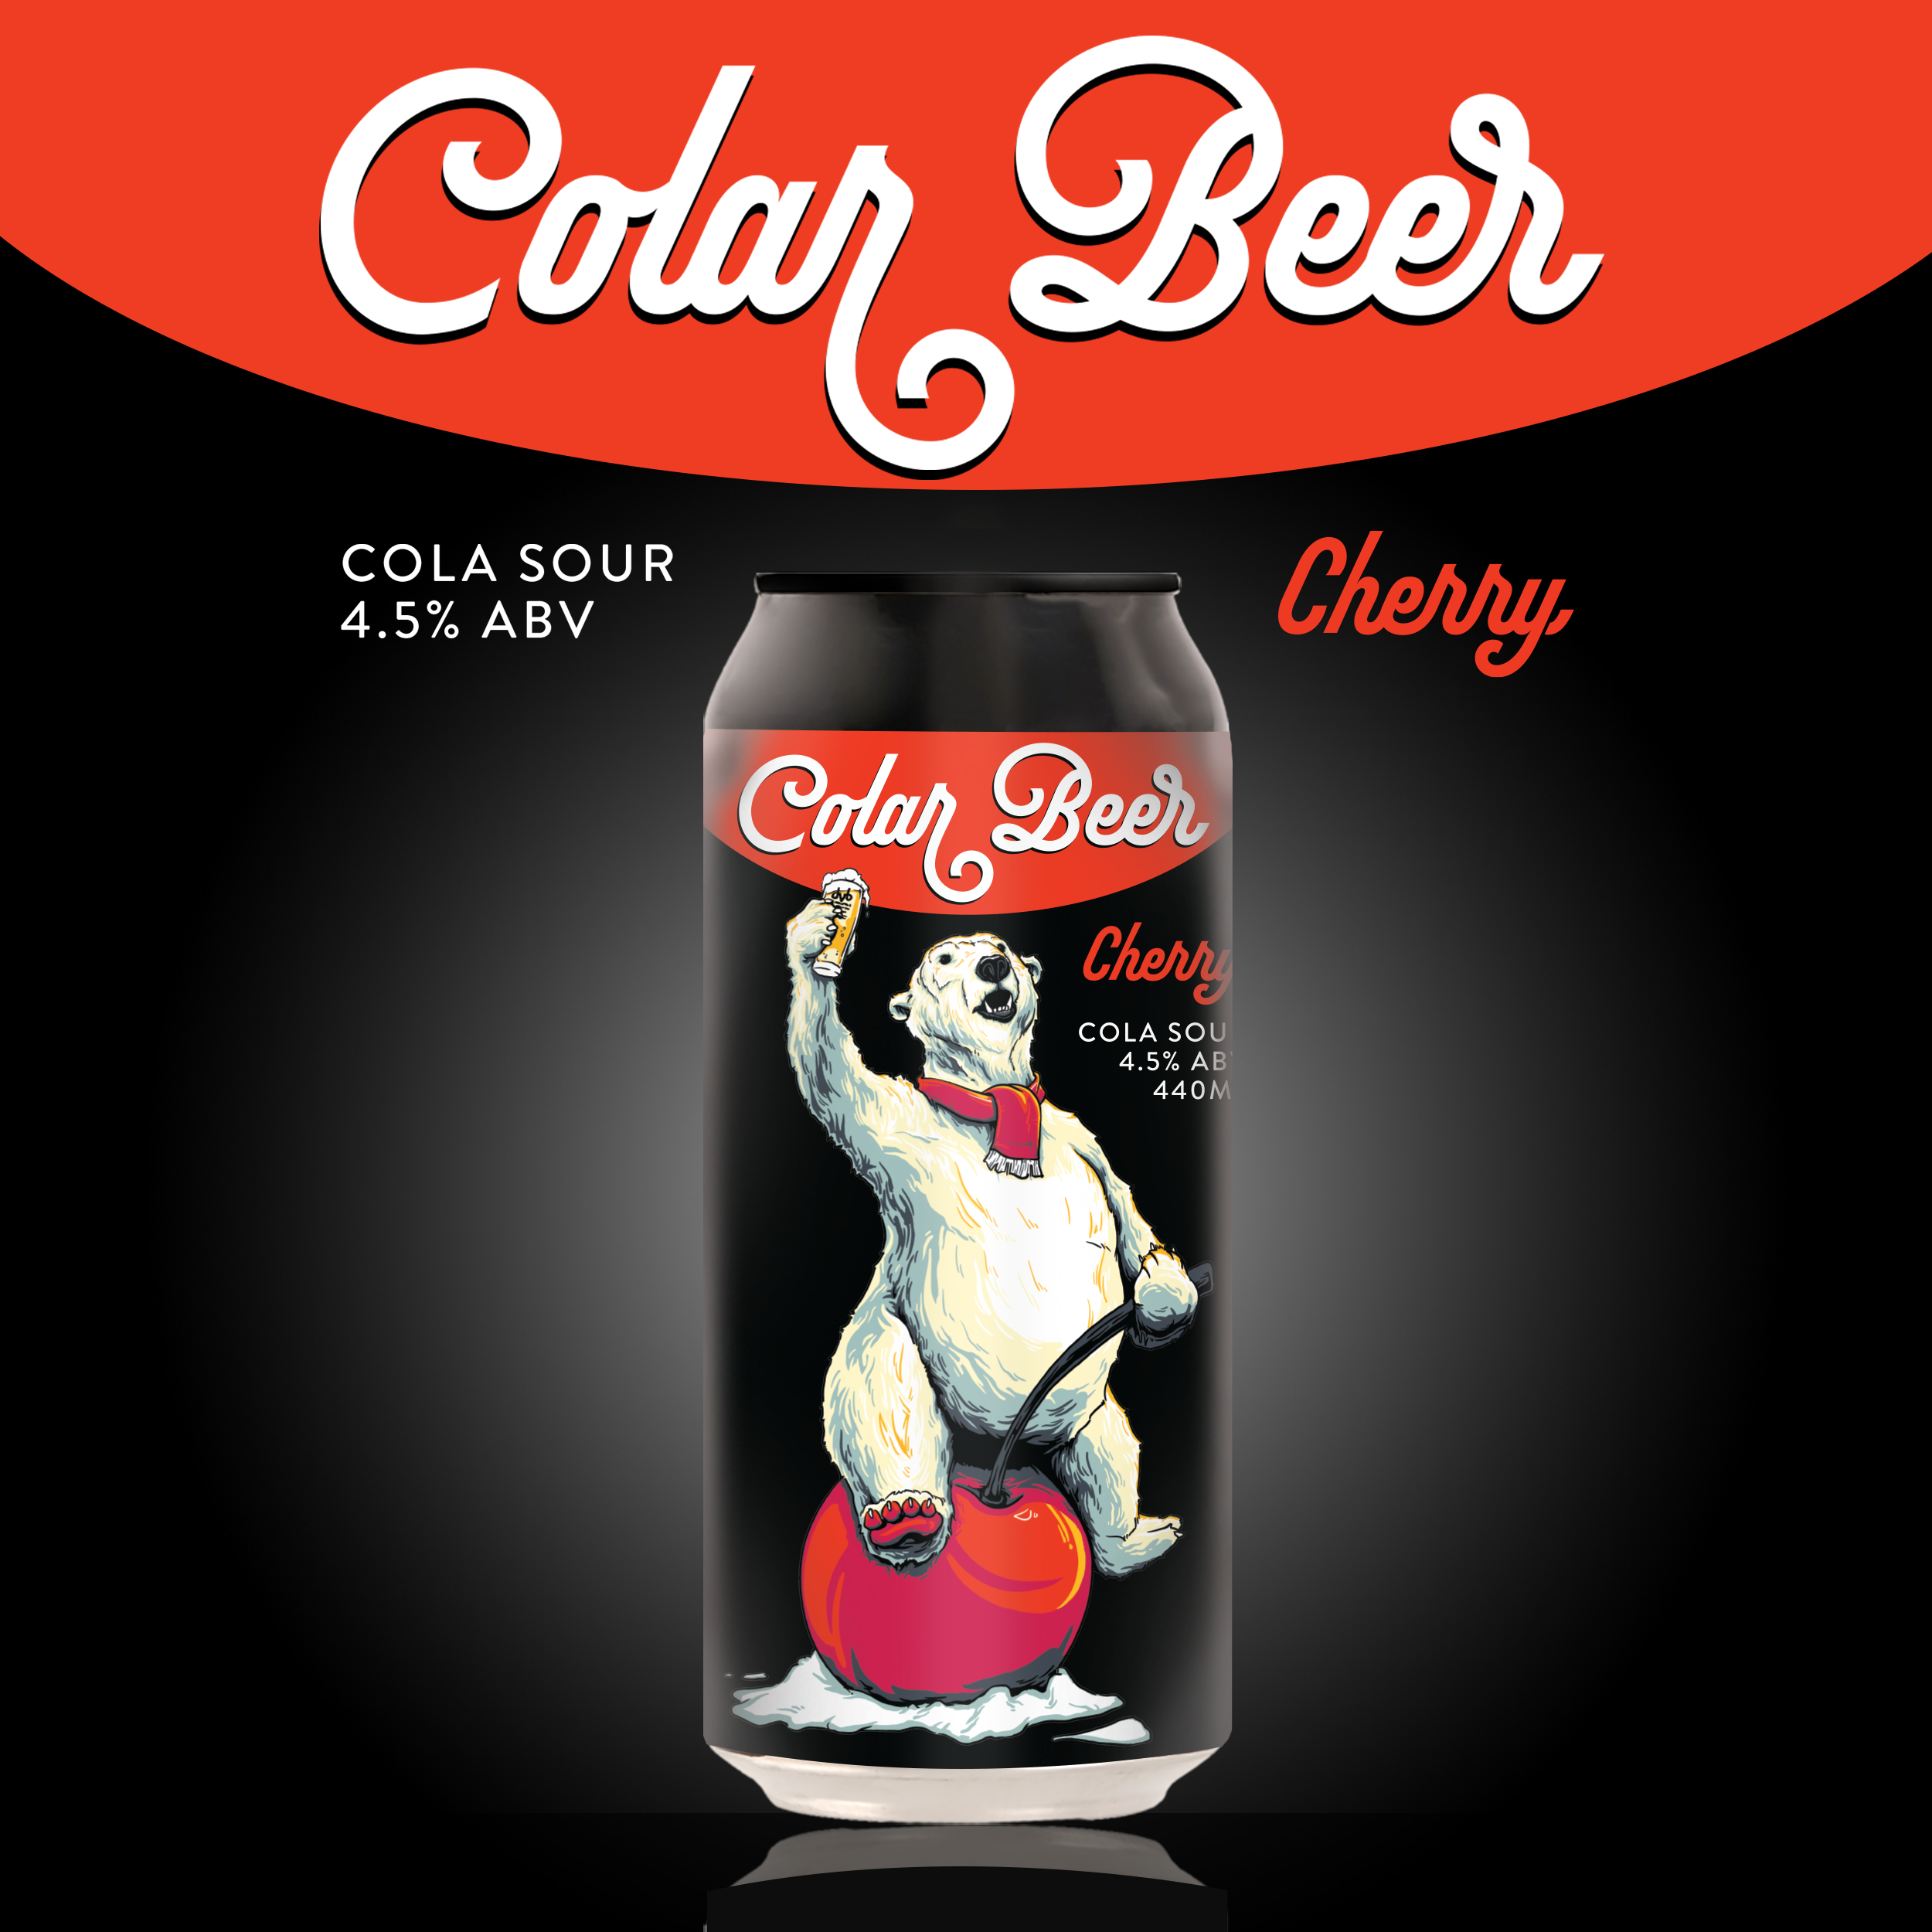 Colar Beer Cherry